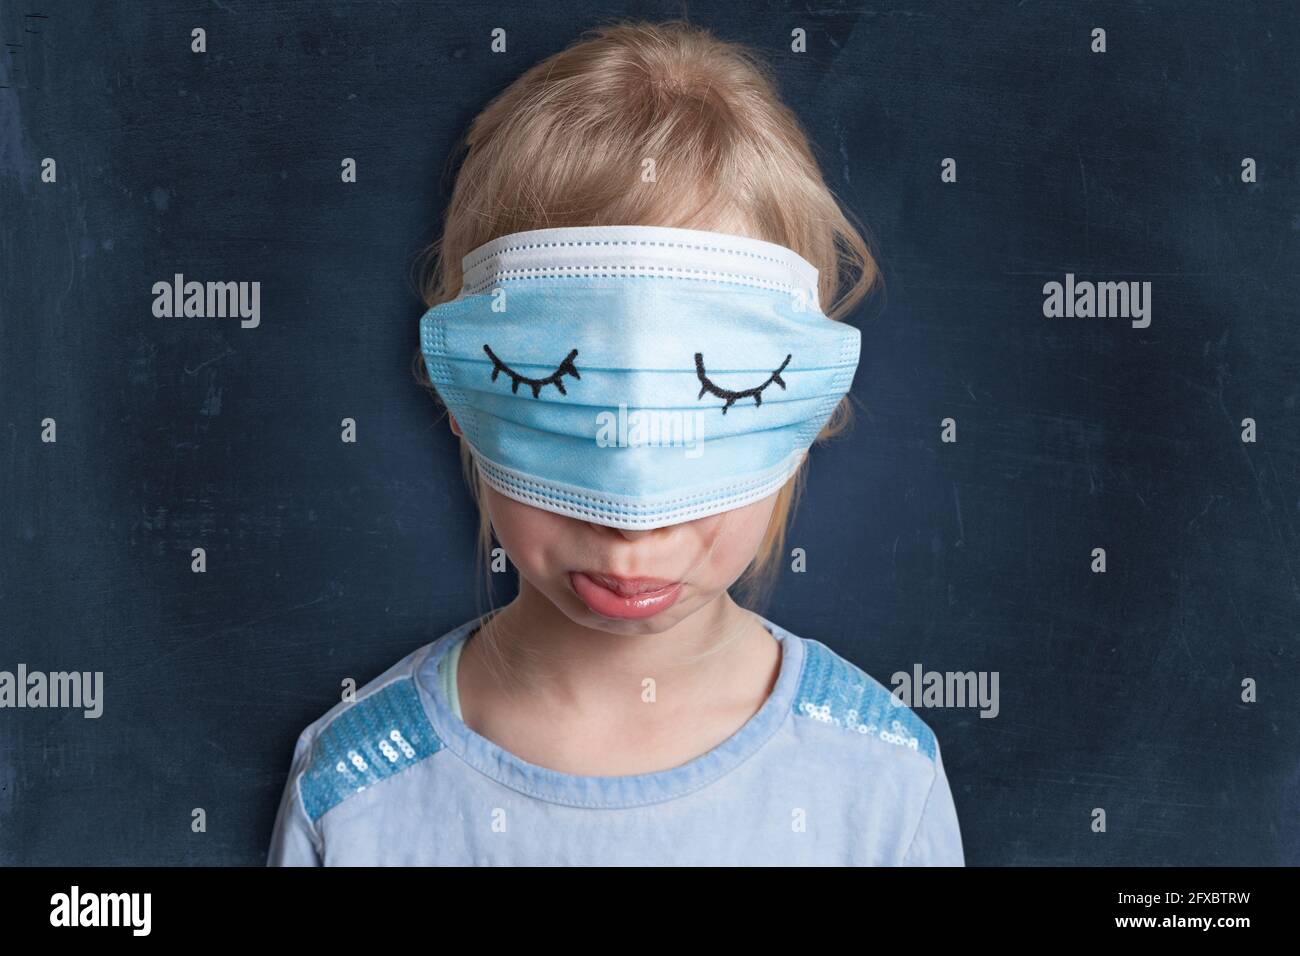 Mécontent fille de porter un masque sur les yeux contre fond noir Banque D'Images